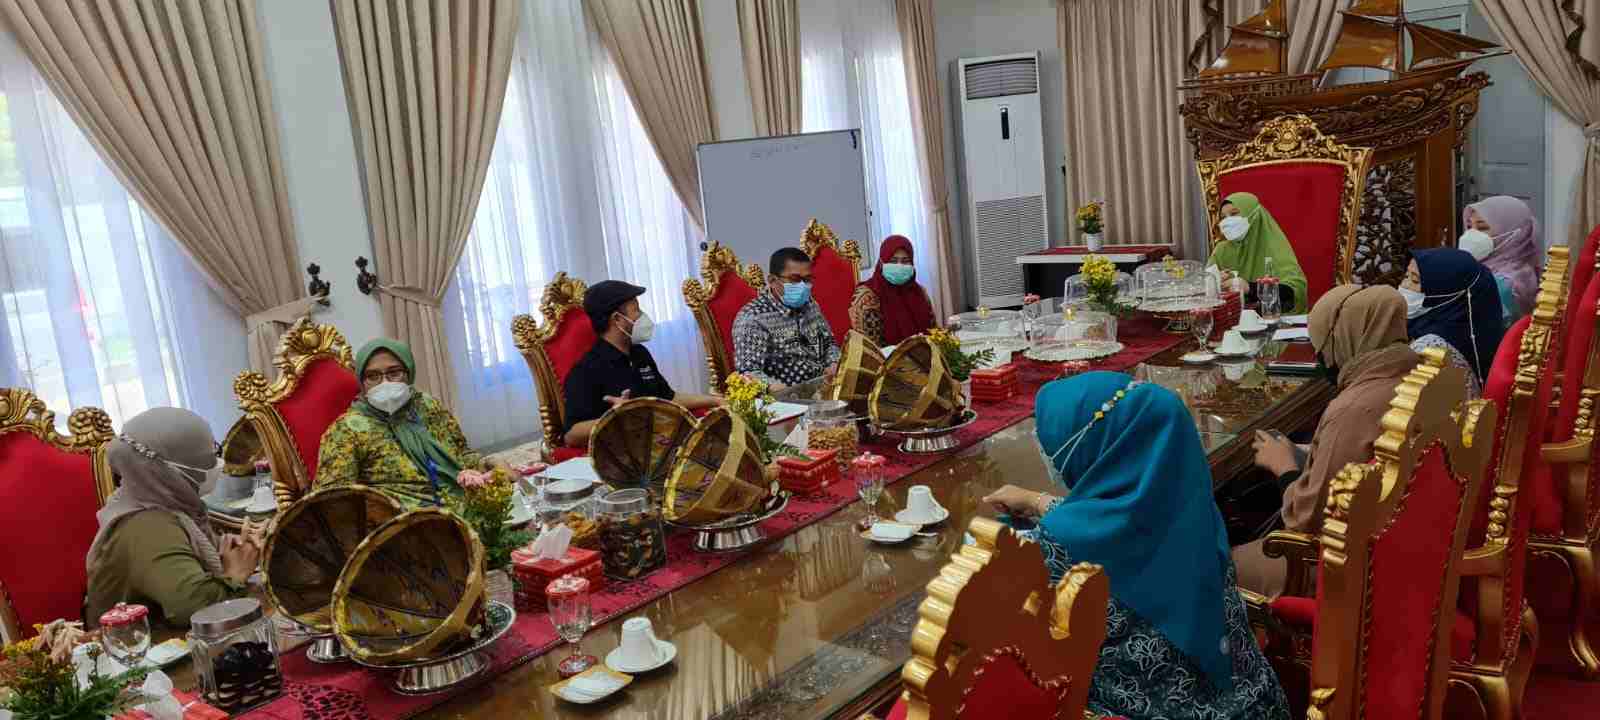 Dinas Kesehatan Provinsi Sulawesi Selatan bersama Unicef dan WHO melakukan audiensi bersama Ketua Tim Penggerak PKK Sulsel